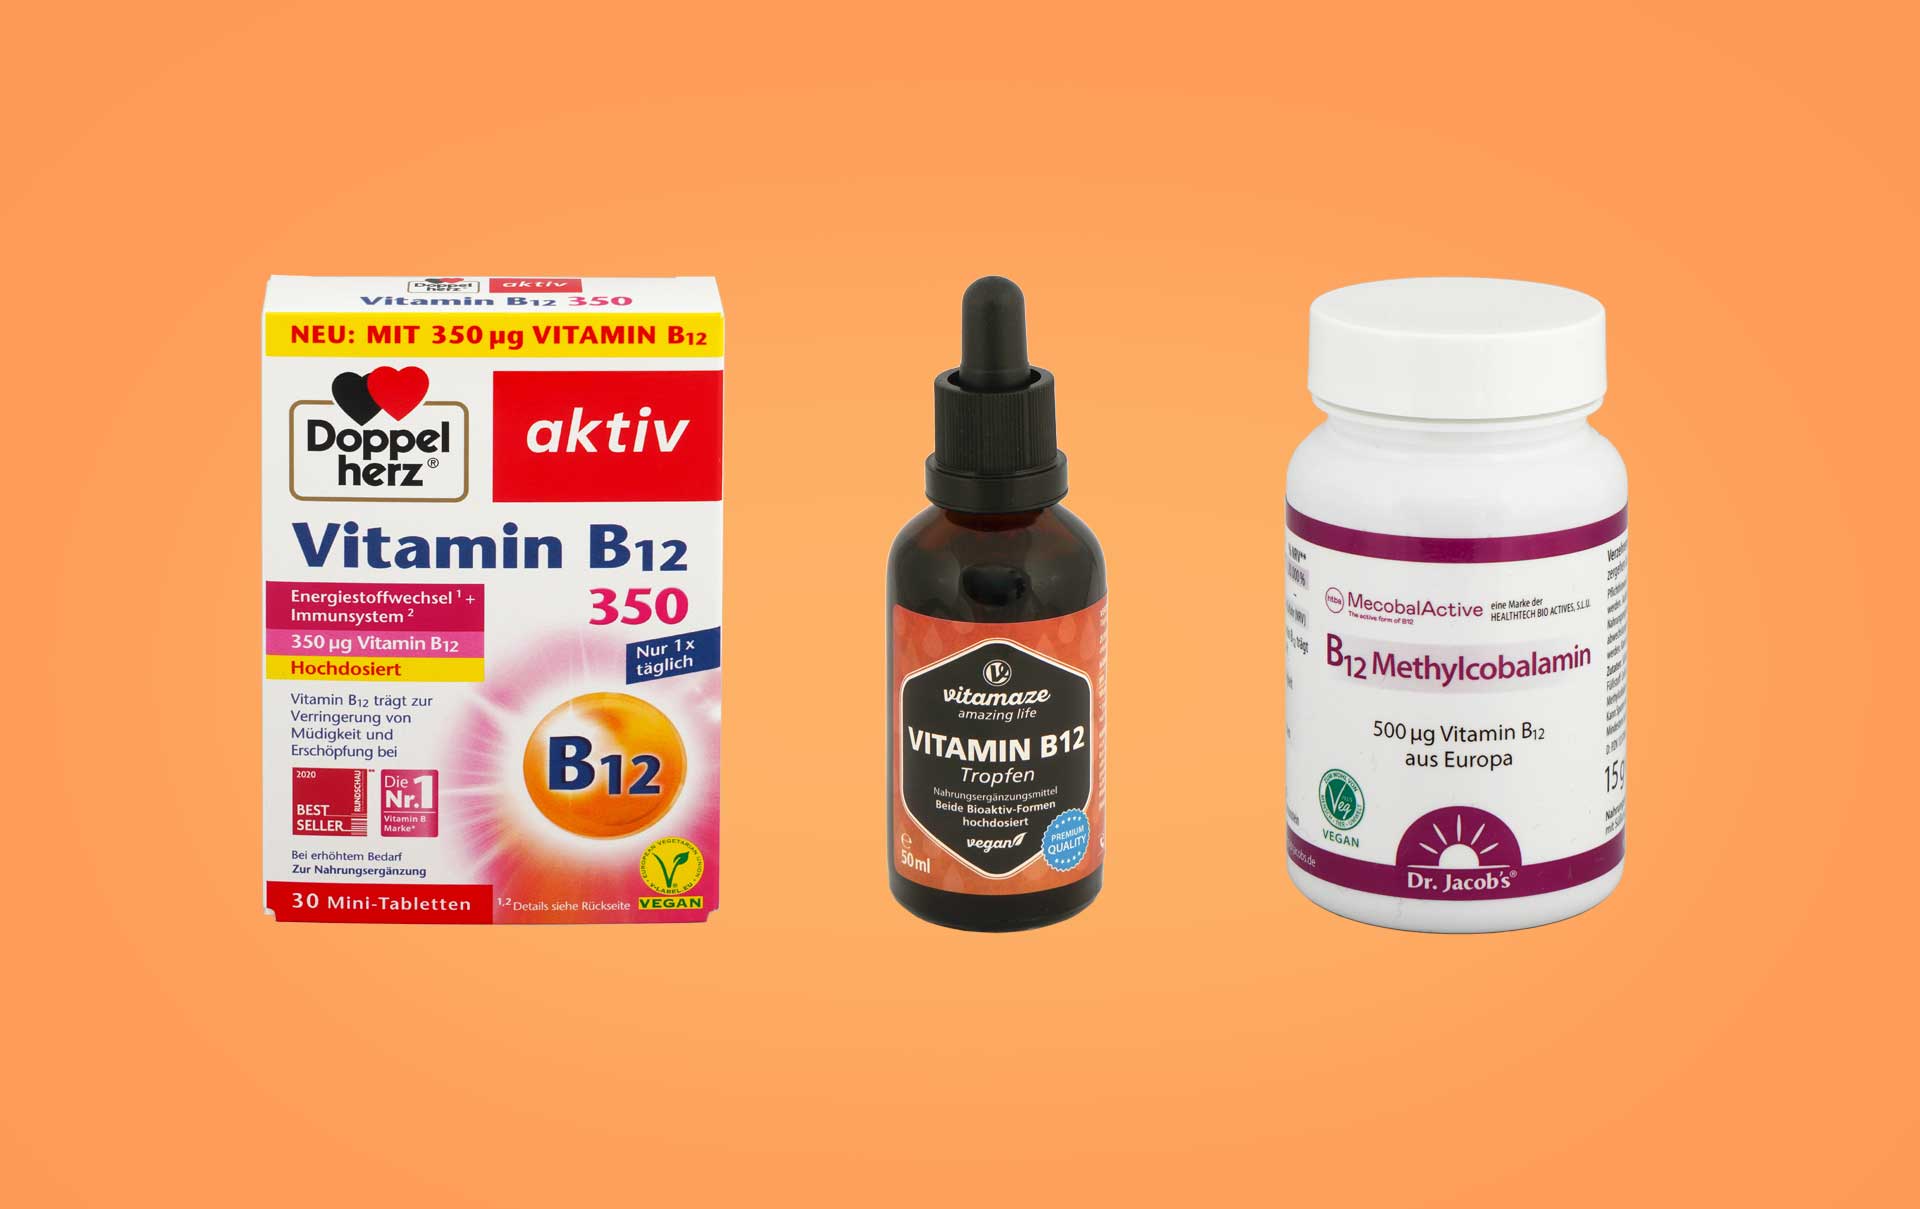 Vitamin-B12-Pr-parate-bei-ko-Test-Teuerstes-Pr-parat-ungen-gend-